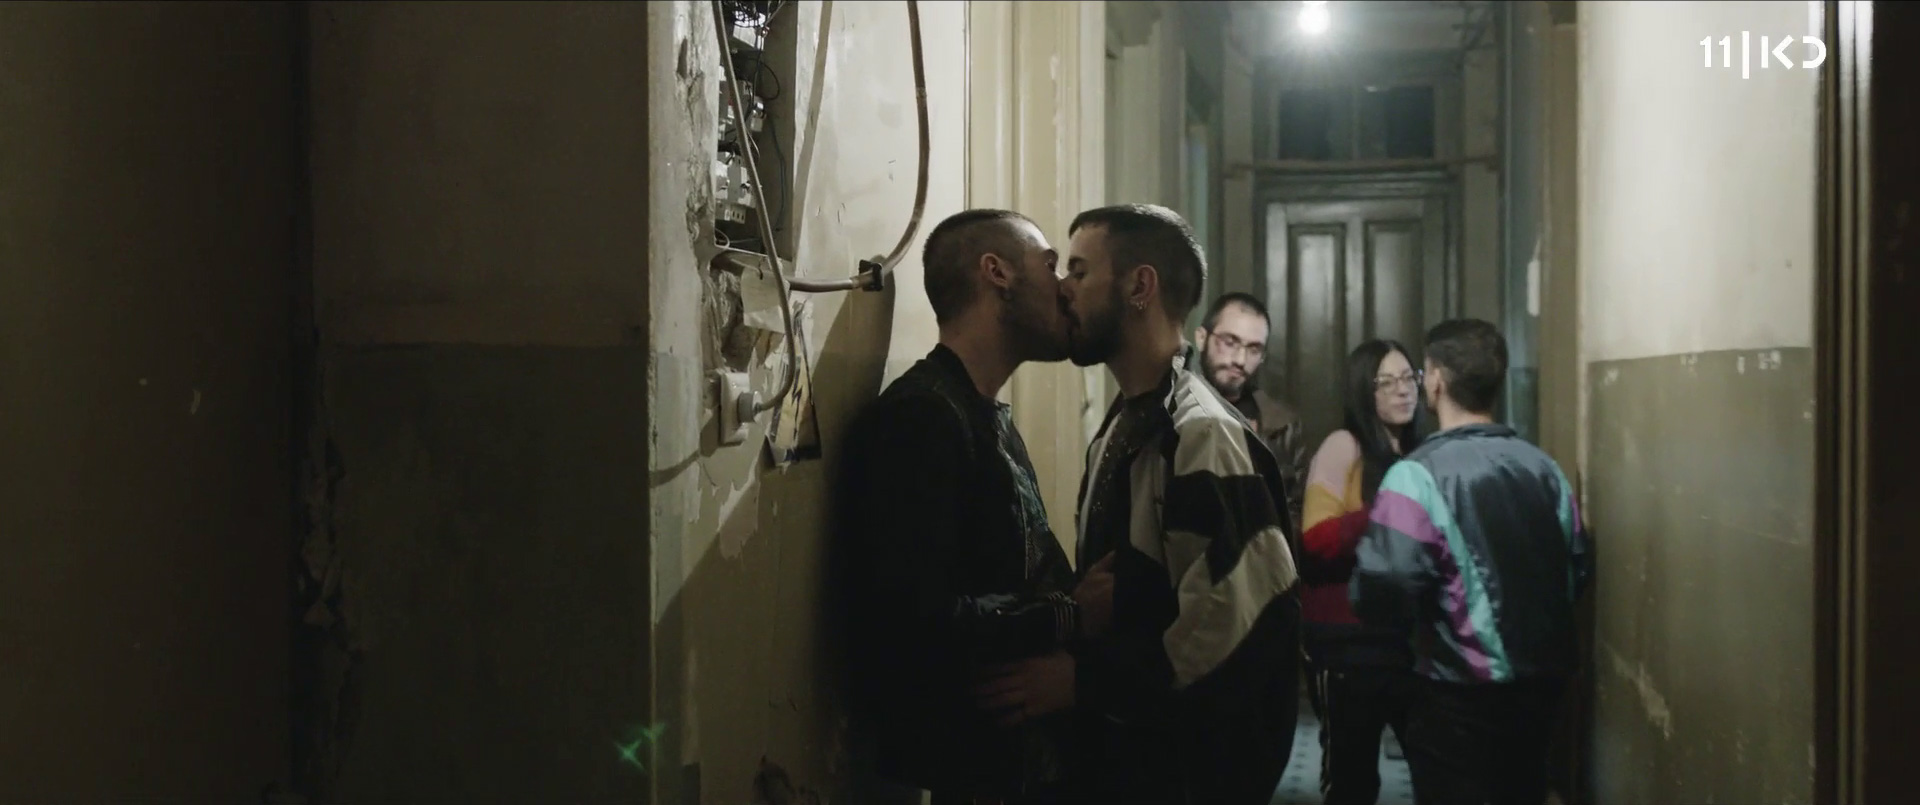 بوسیدن دو مرد همجنسگرا